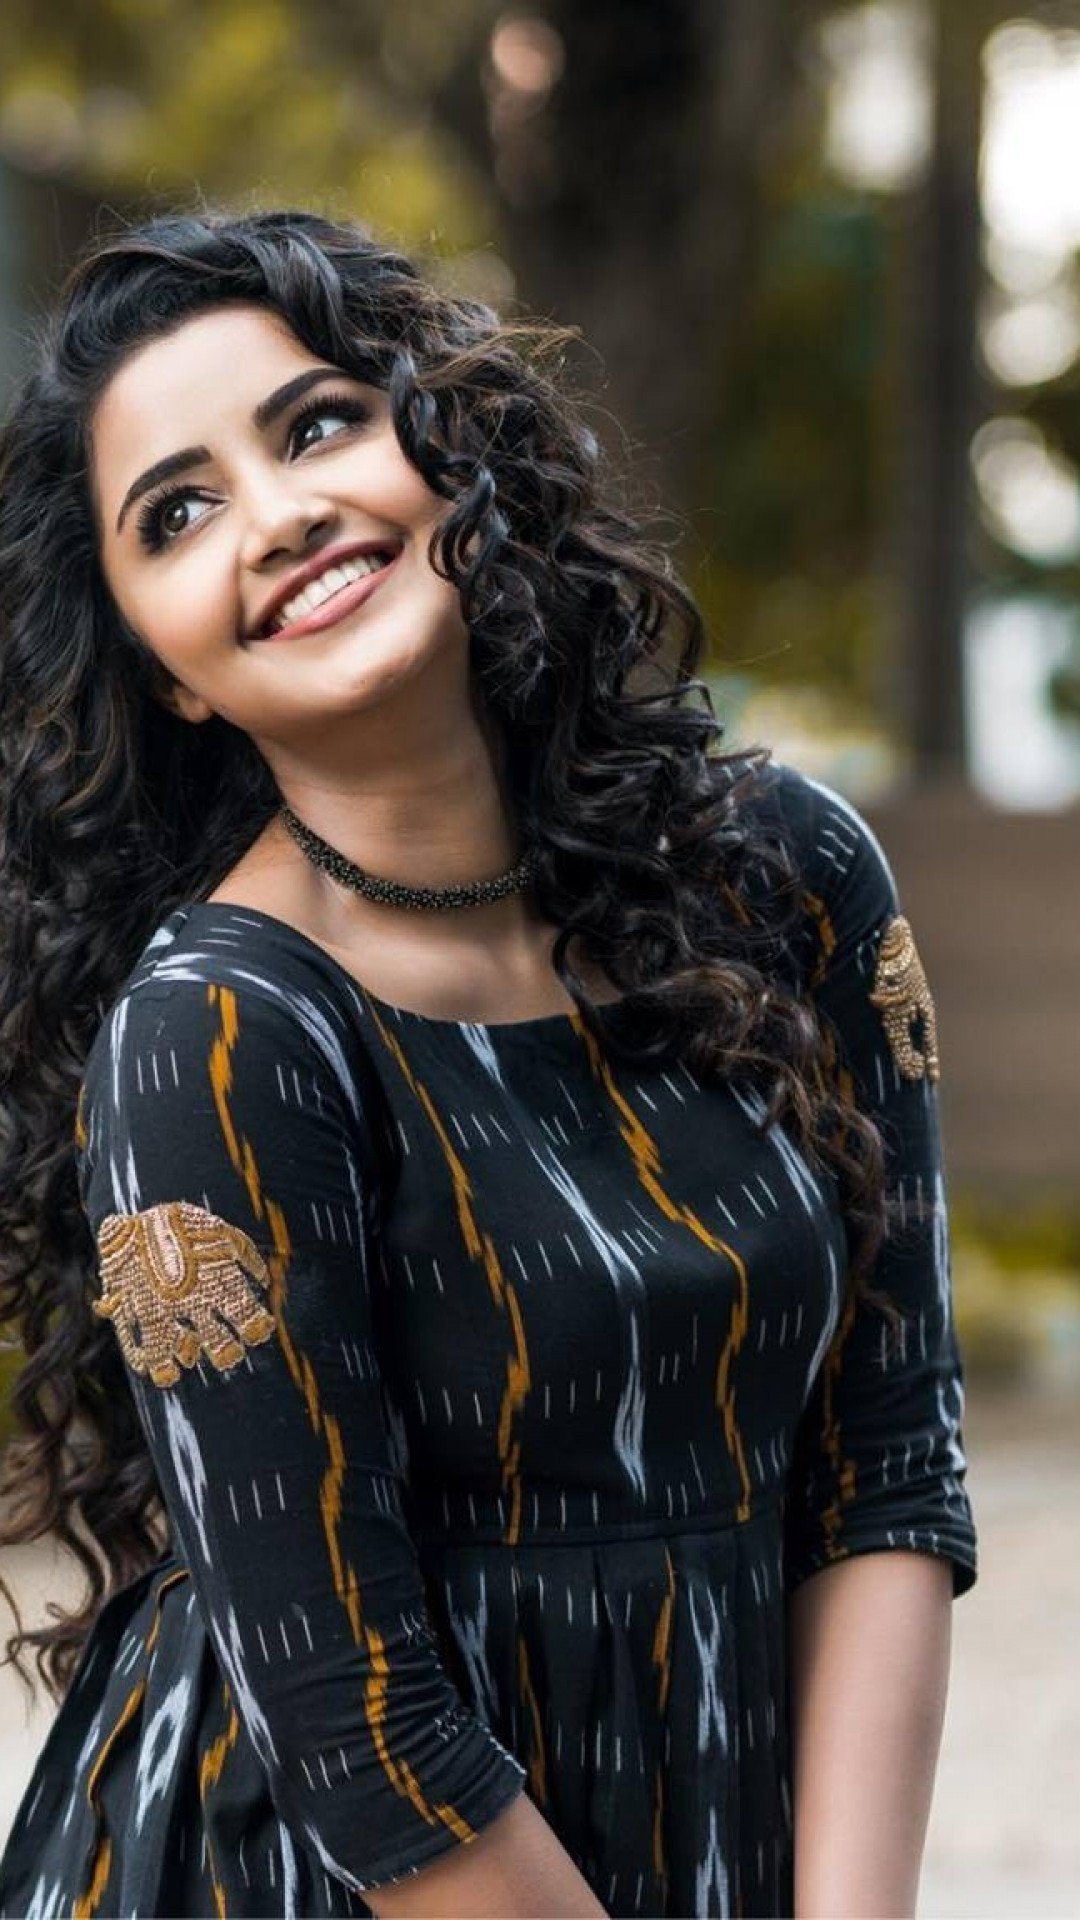 Anupama Parameswaran, Actress, Smiling - Anupama Parameswaran - HD Wallpaper 